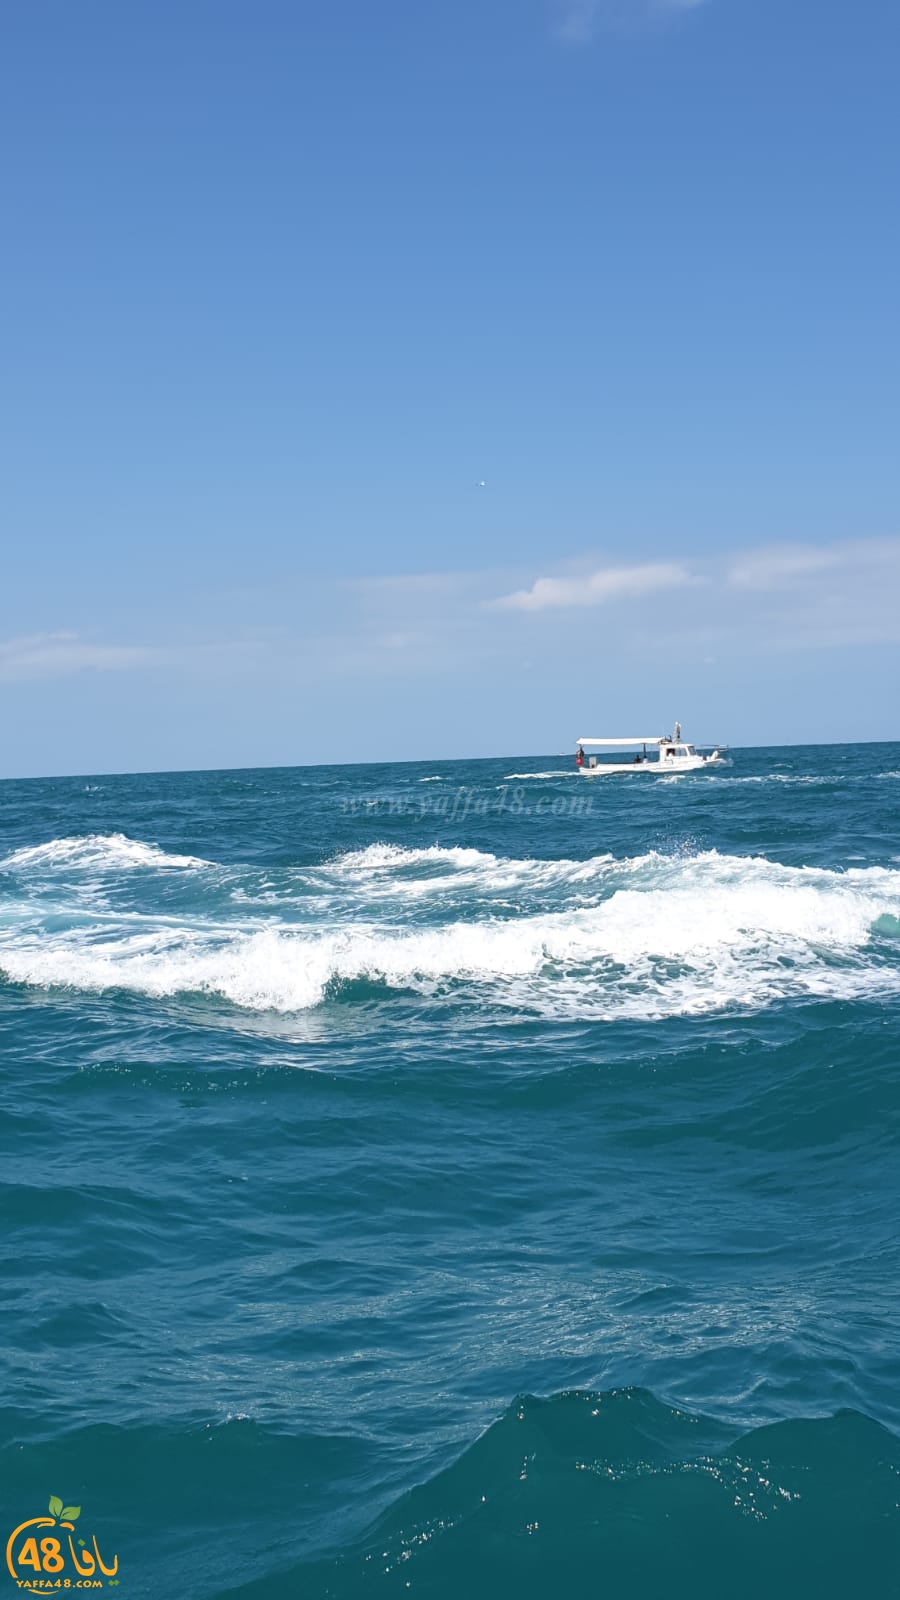  فيديو: انطلاق قافلة زوارق الصيادين البحر رزقنا وموروثنا 3 من ميناء يافا